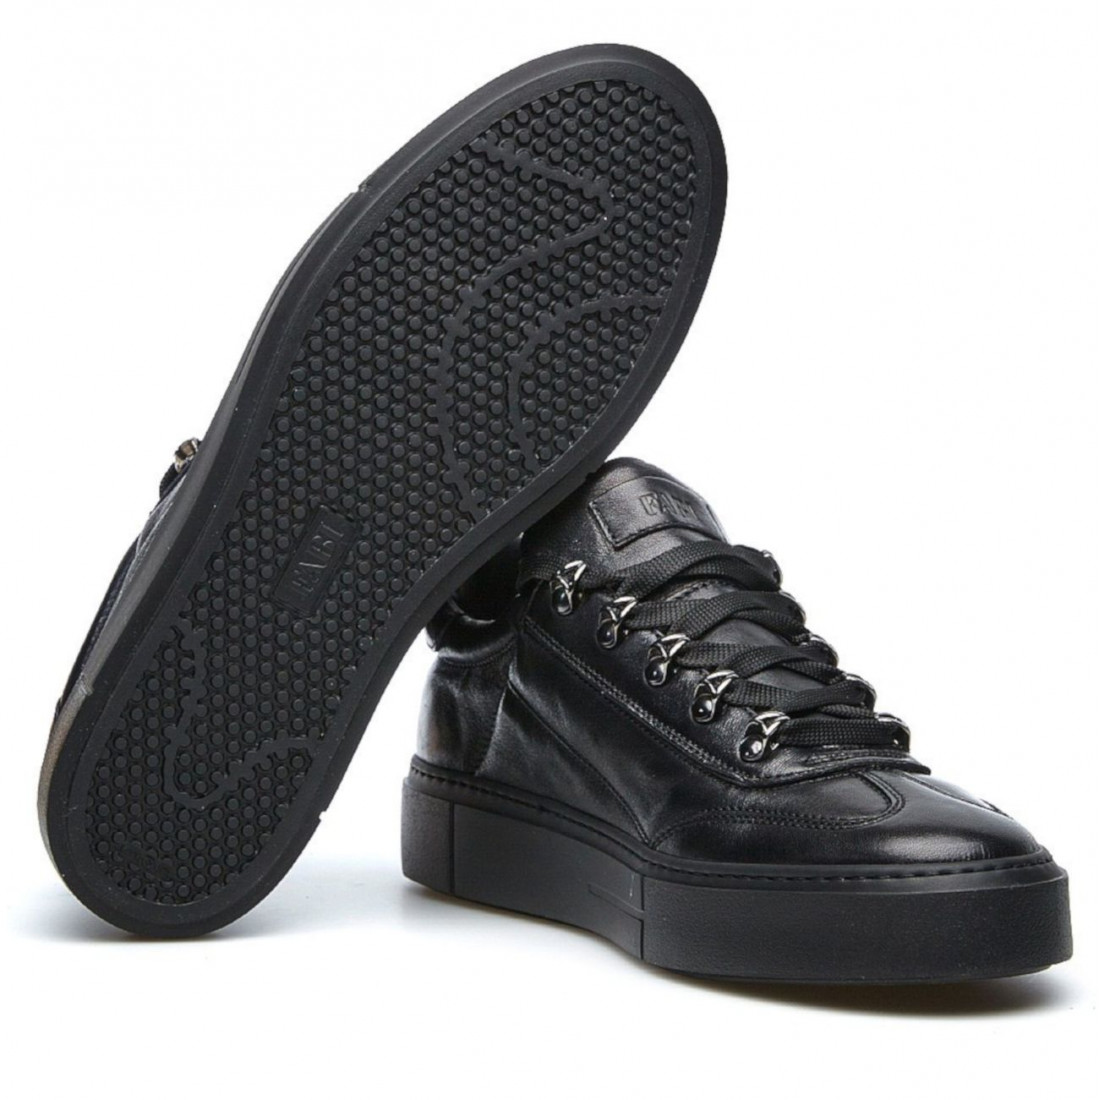 Sneakers Fabi Puget FU9580 nera con ganci in metallo